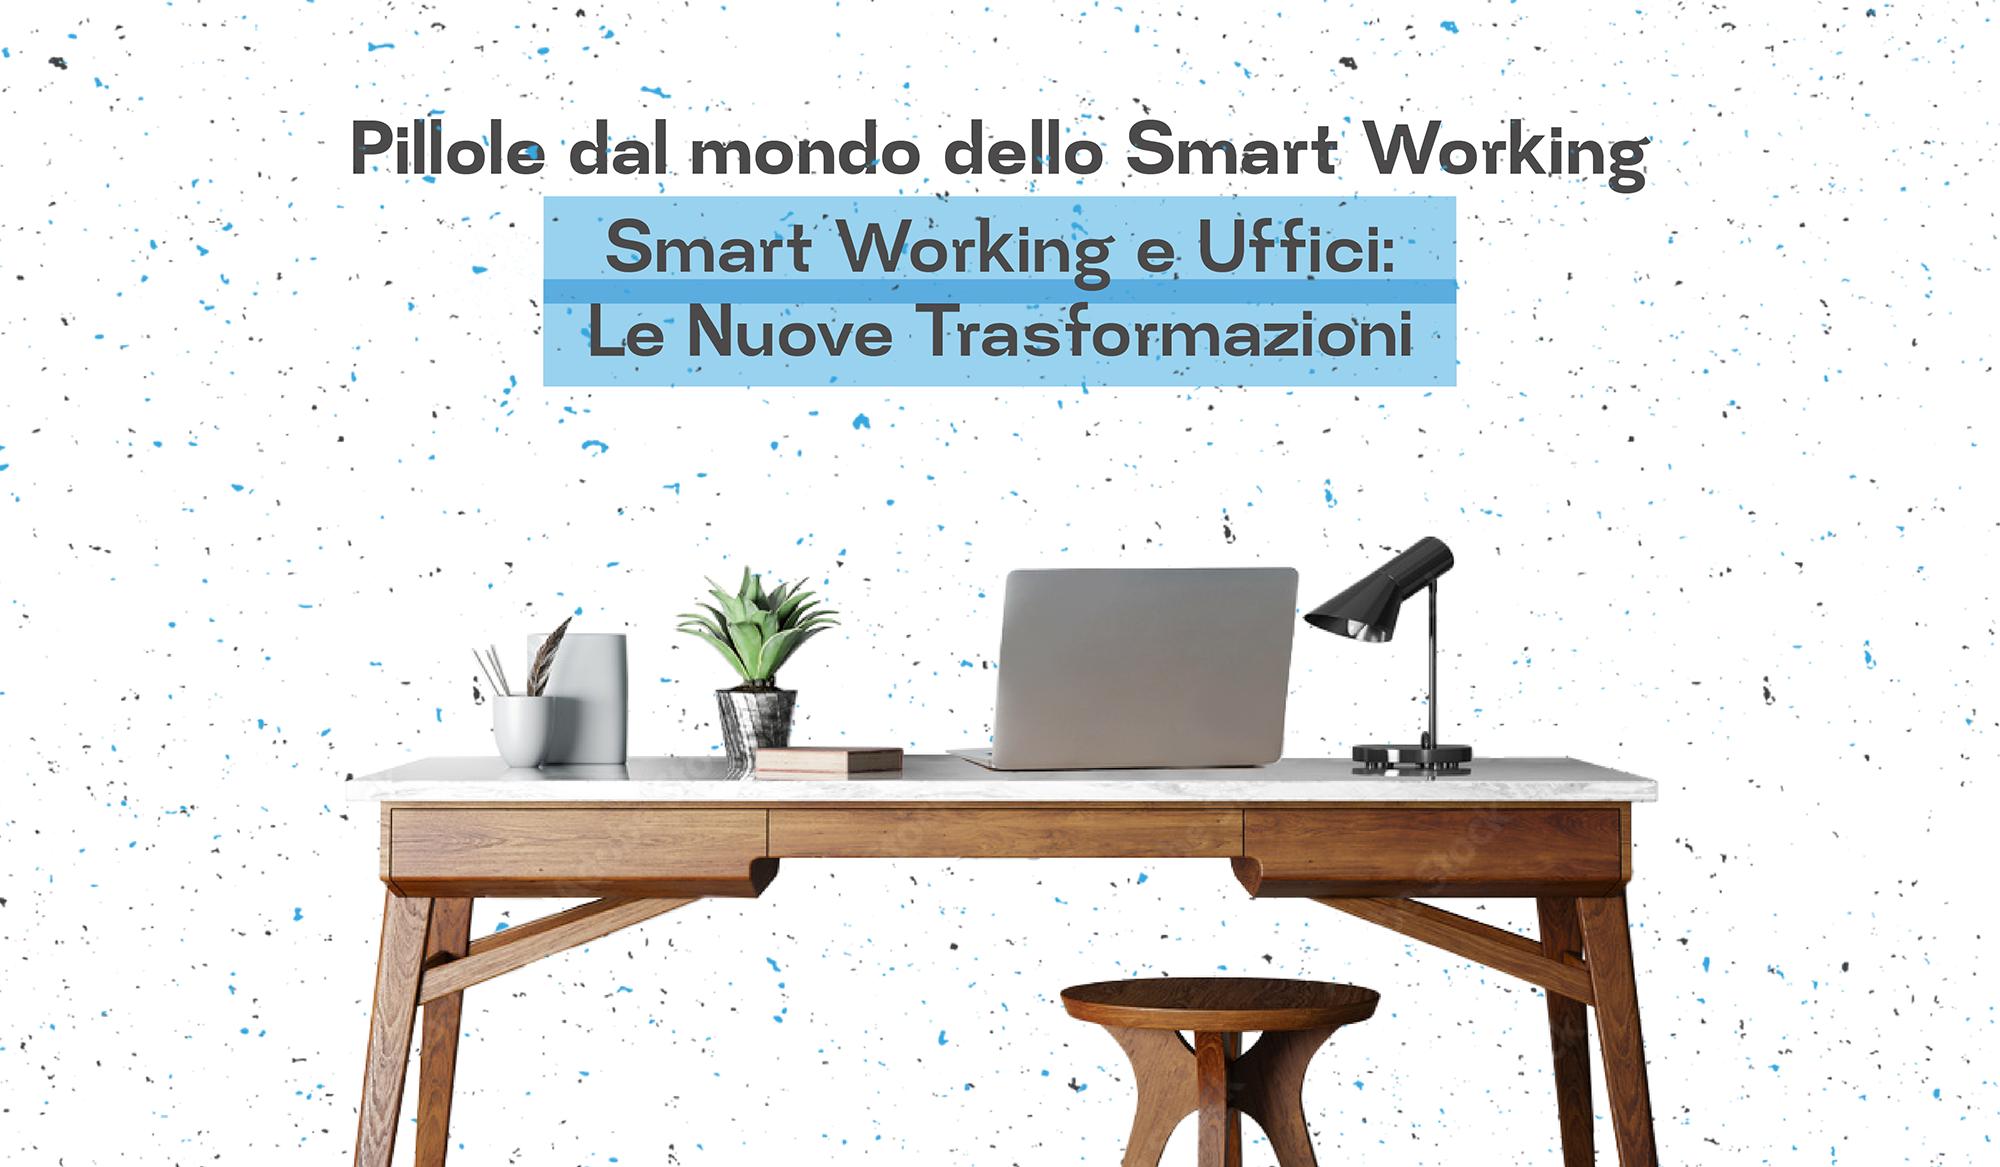 Smart working e uffici: le nuove trasformazioni